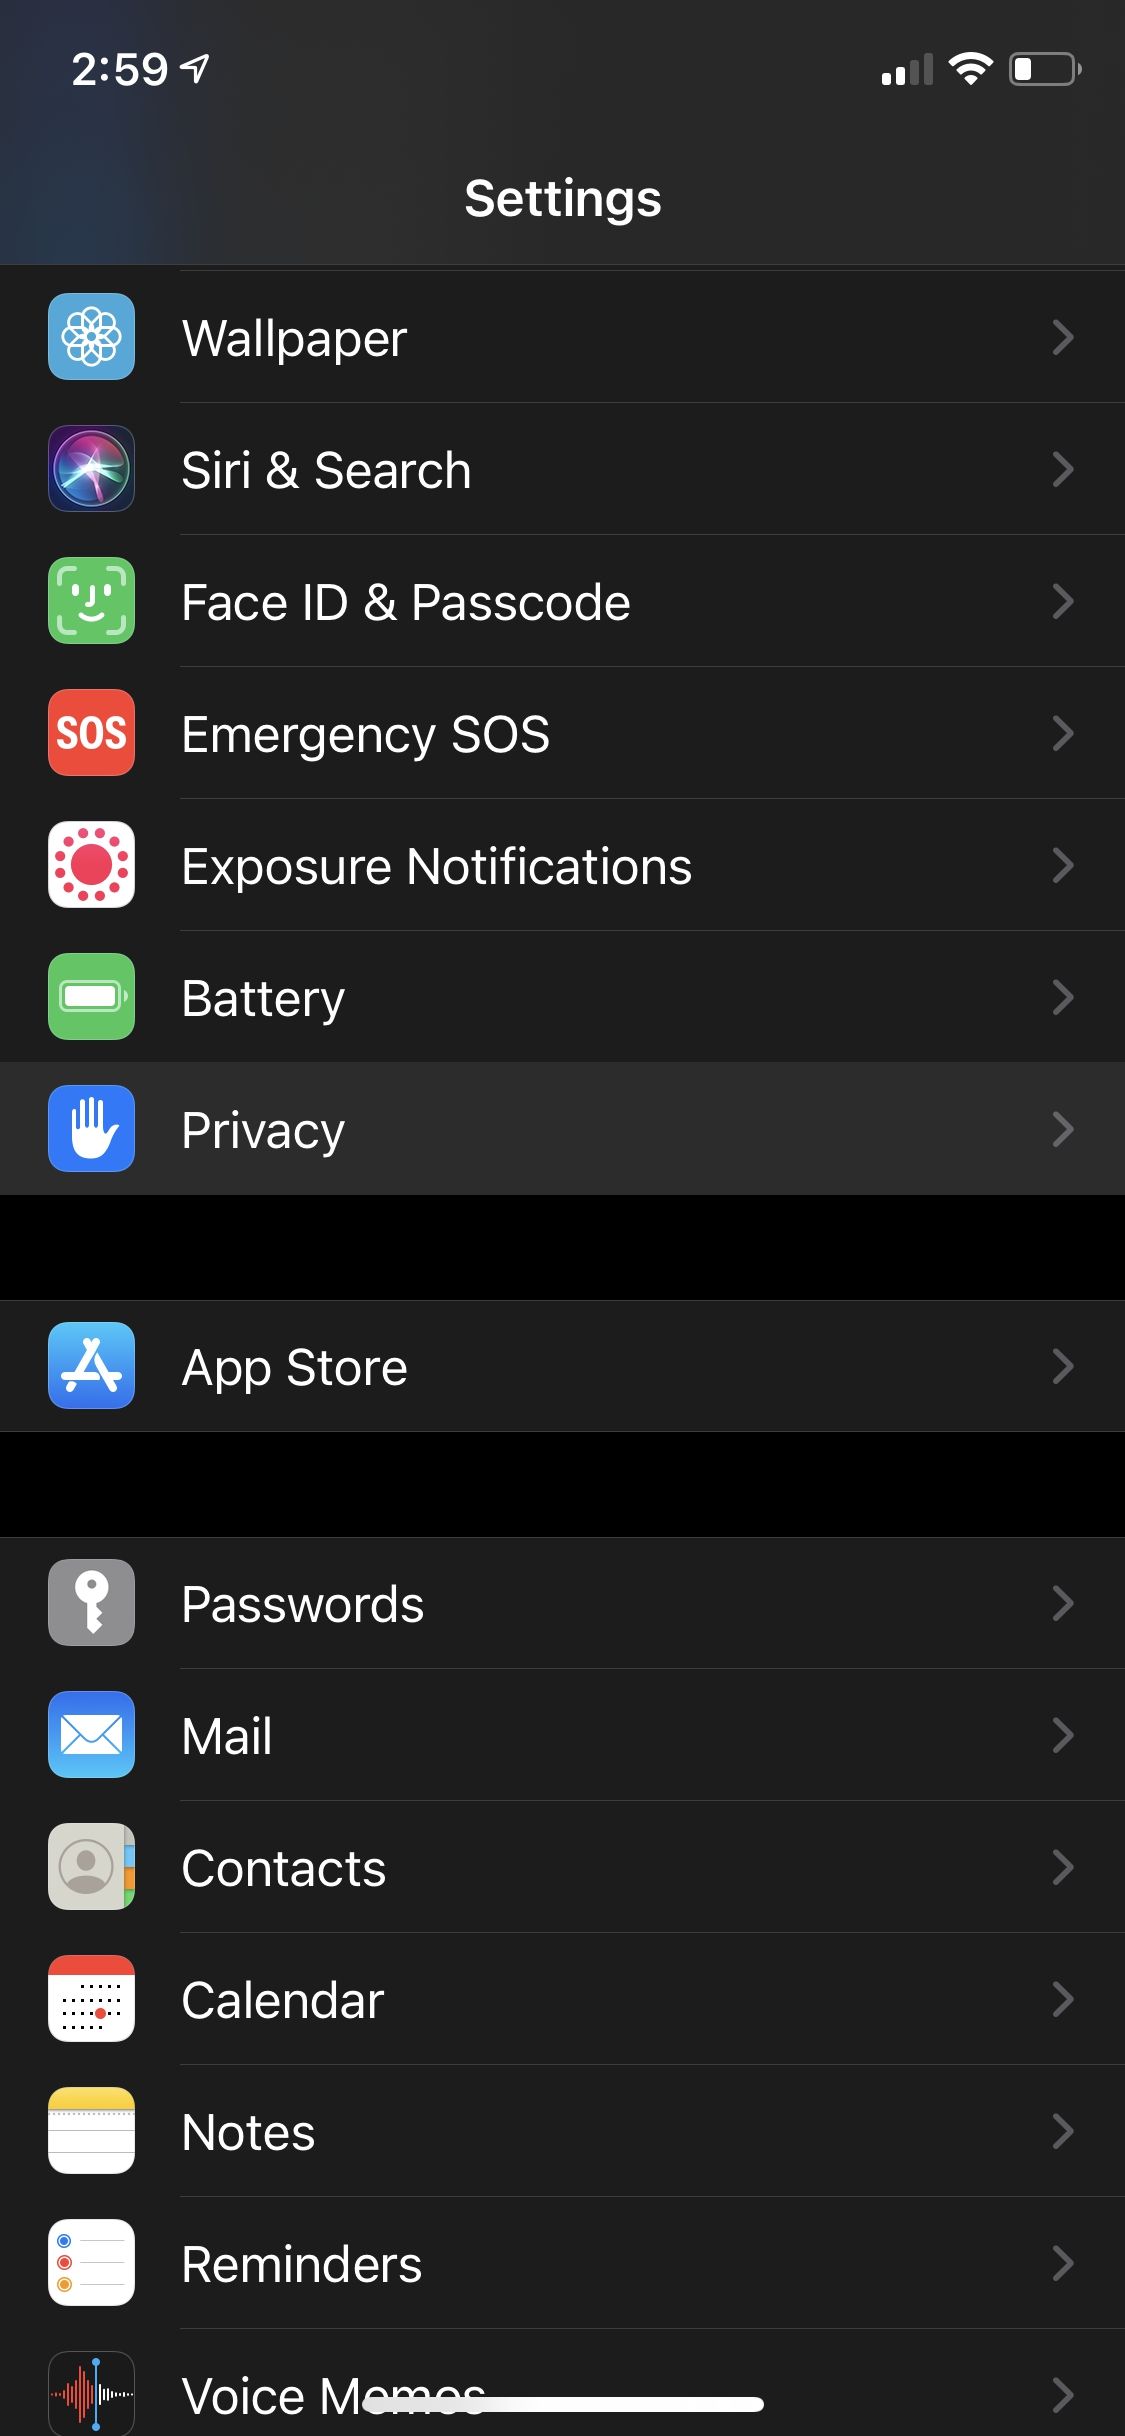 iOS settings menu